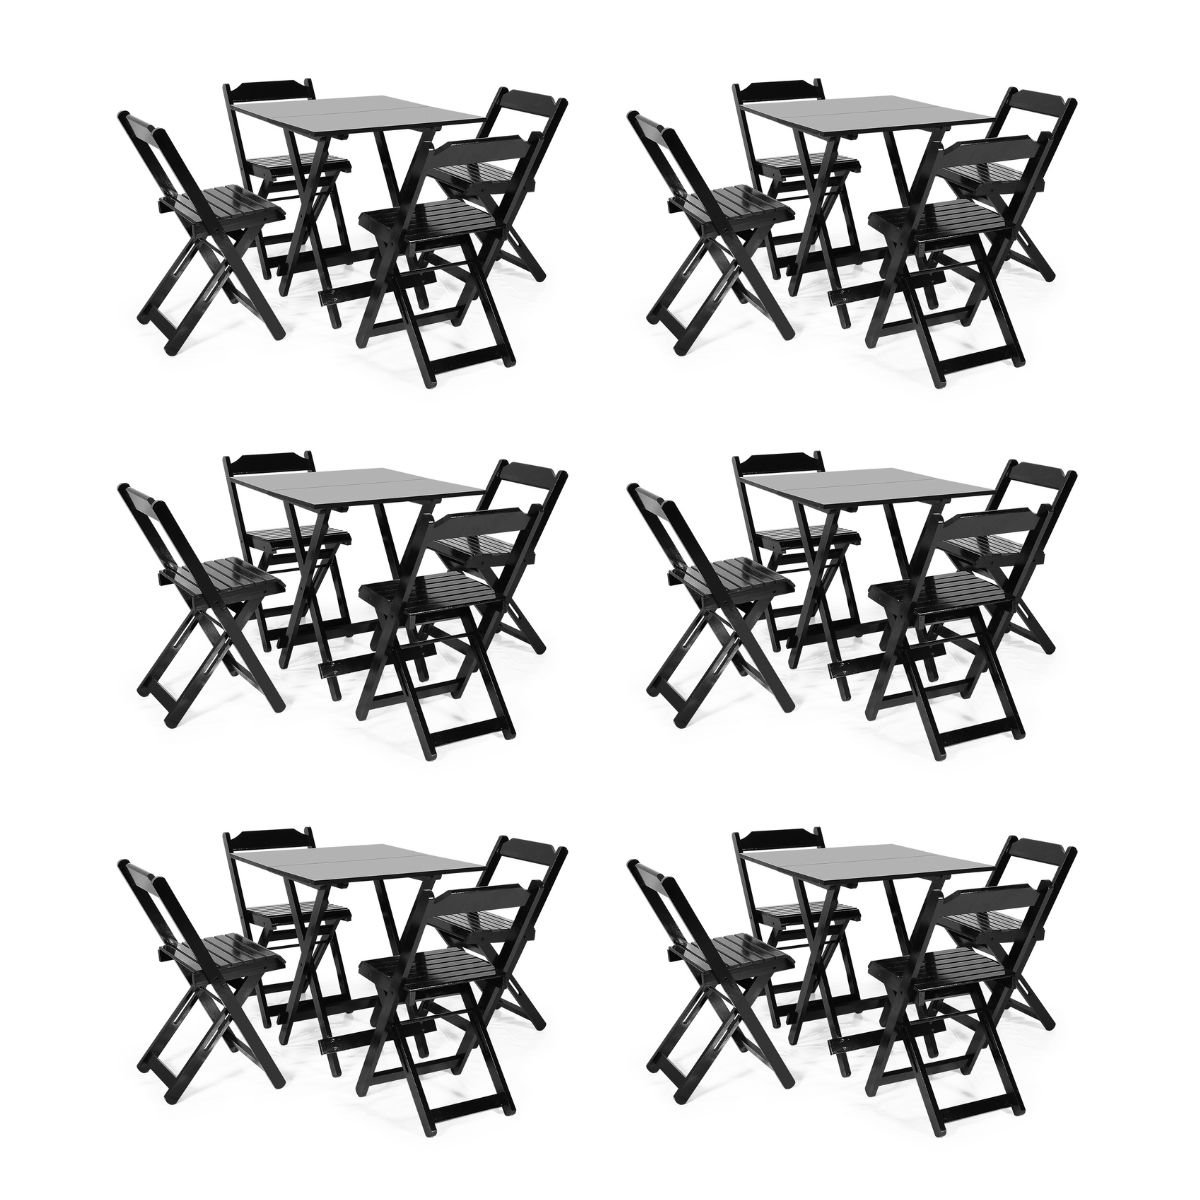 Kit 6 Conjuntos Dobráveis 70 X 70 com 4 Cadeiras Dobráveis Preto - Móveis Britz